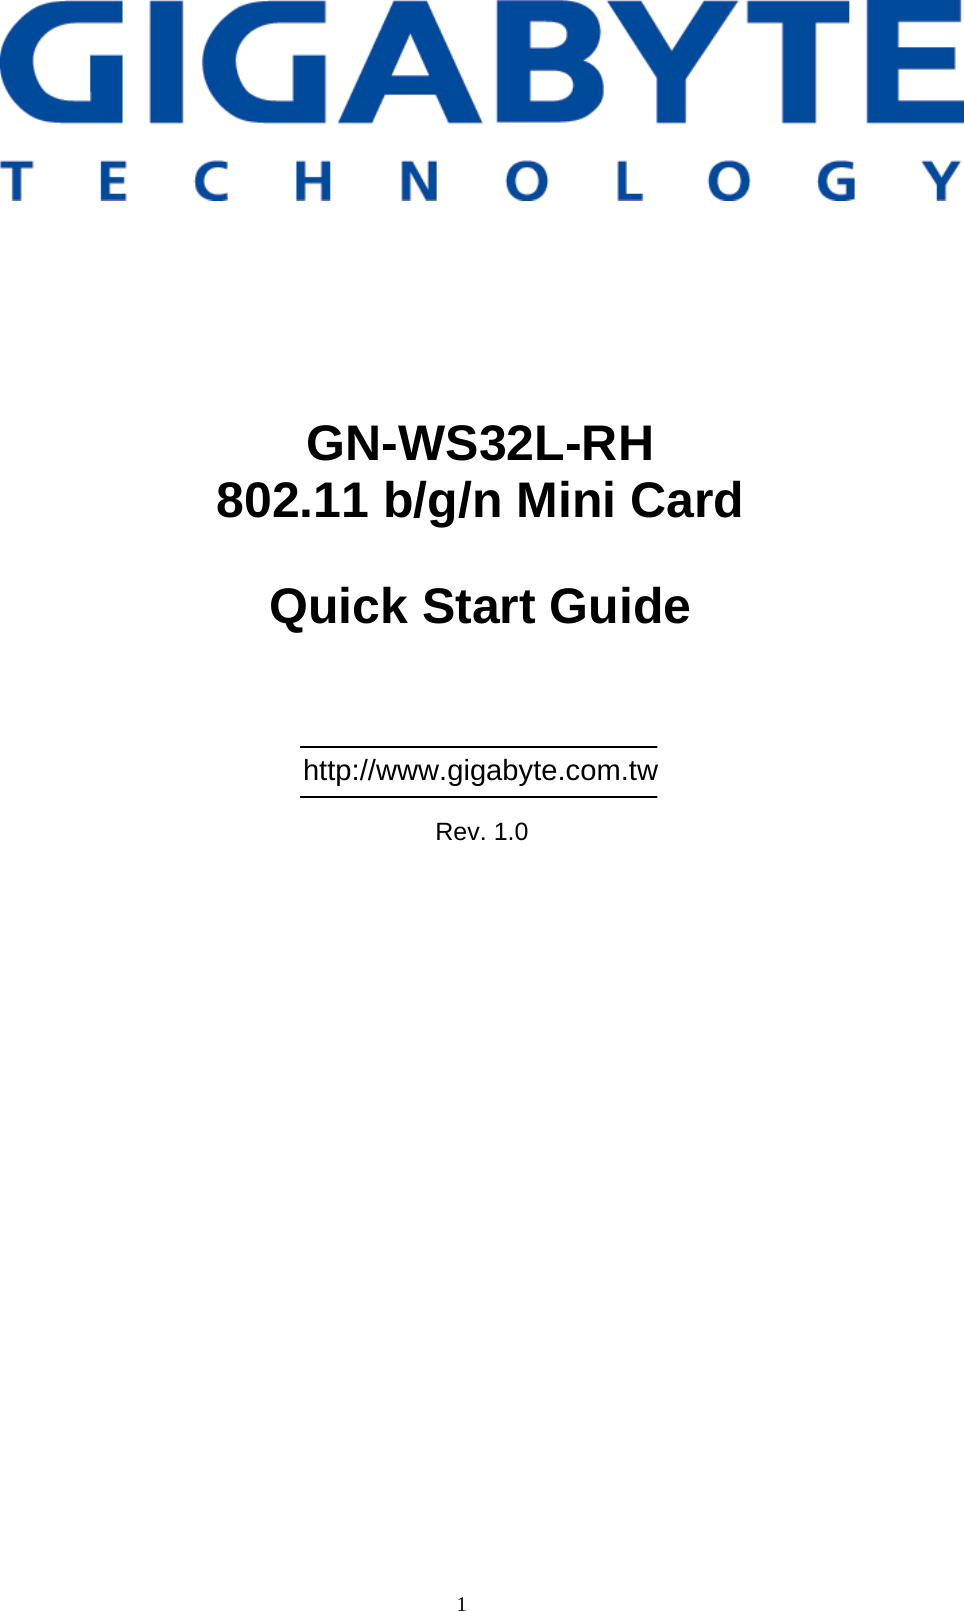 1                  GN-WS32L-RH 802.11 b/g/n Mini Card  Quick Start Guide      http://www.gigabyte.com.tw  Rev. 1.0 